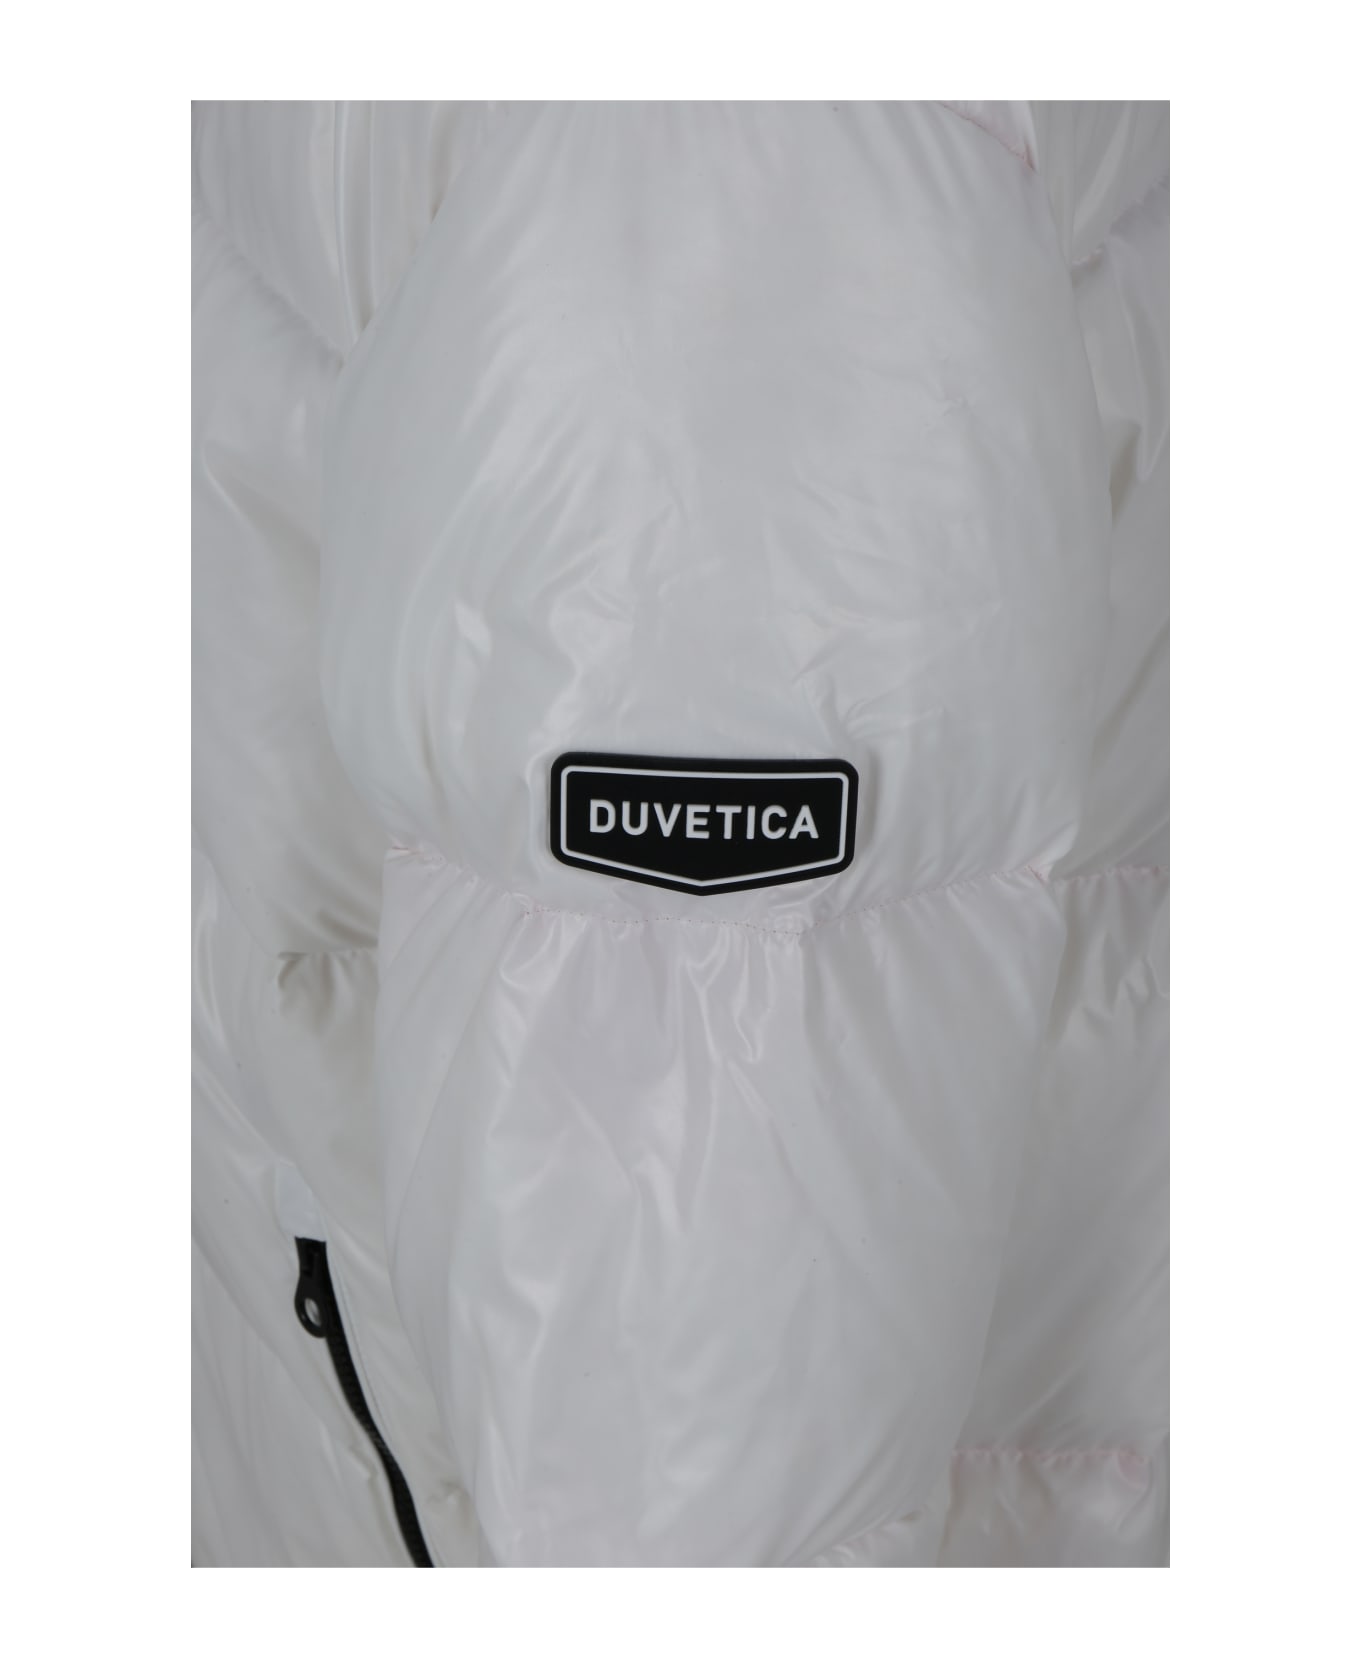 Duvetica Auva Down Jacket - White